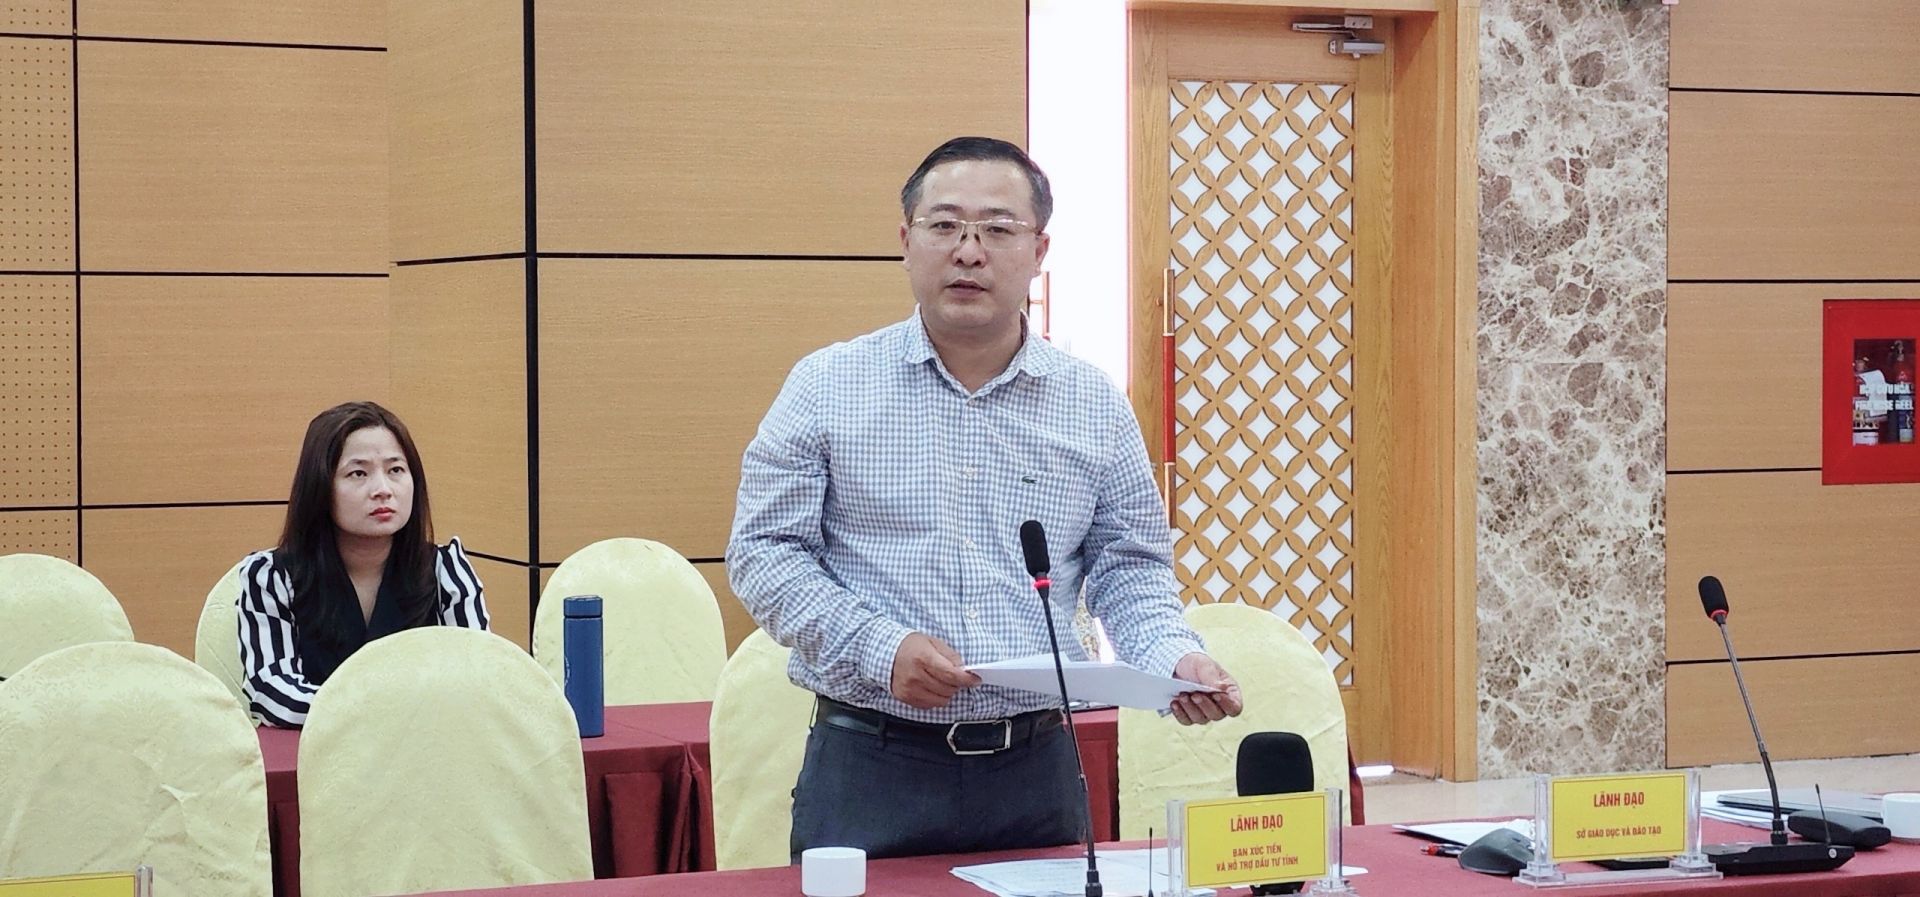 Ông Nguyễn Đoàn Đình Cường lãnh đạo ban xúc tiến và hỗ trợ đầu tư tỉnh Quảng Ninh trao đổi cung cấp thông tin báo chí